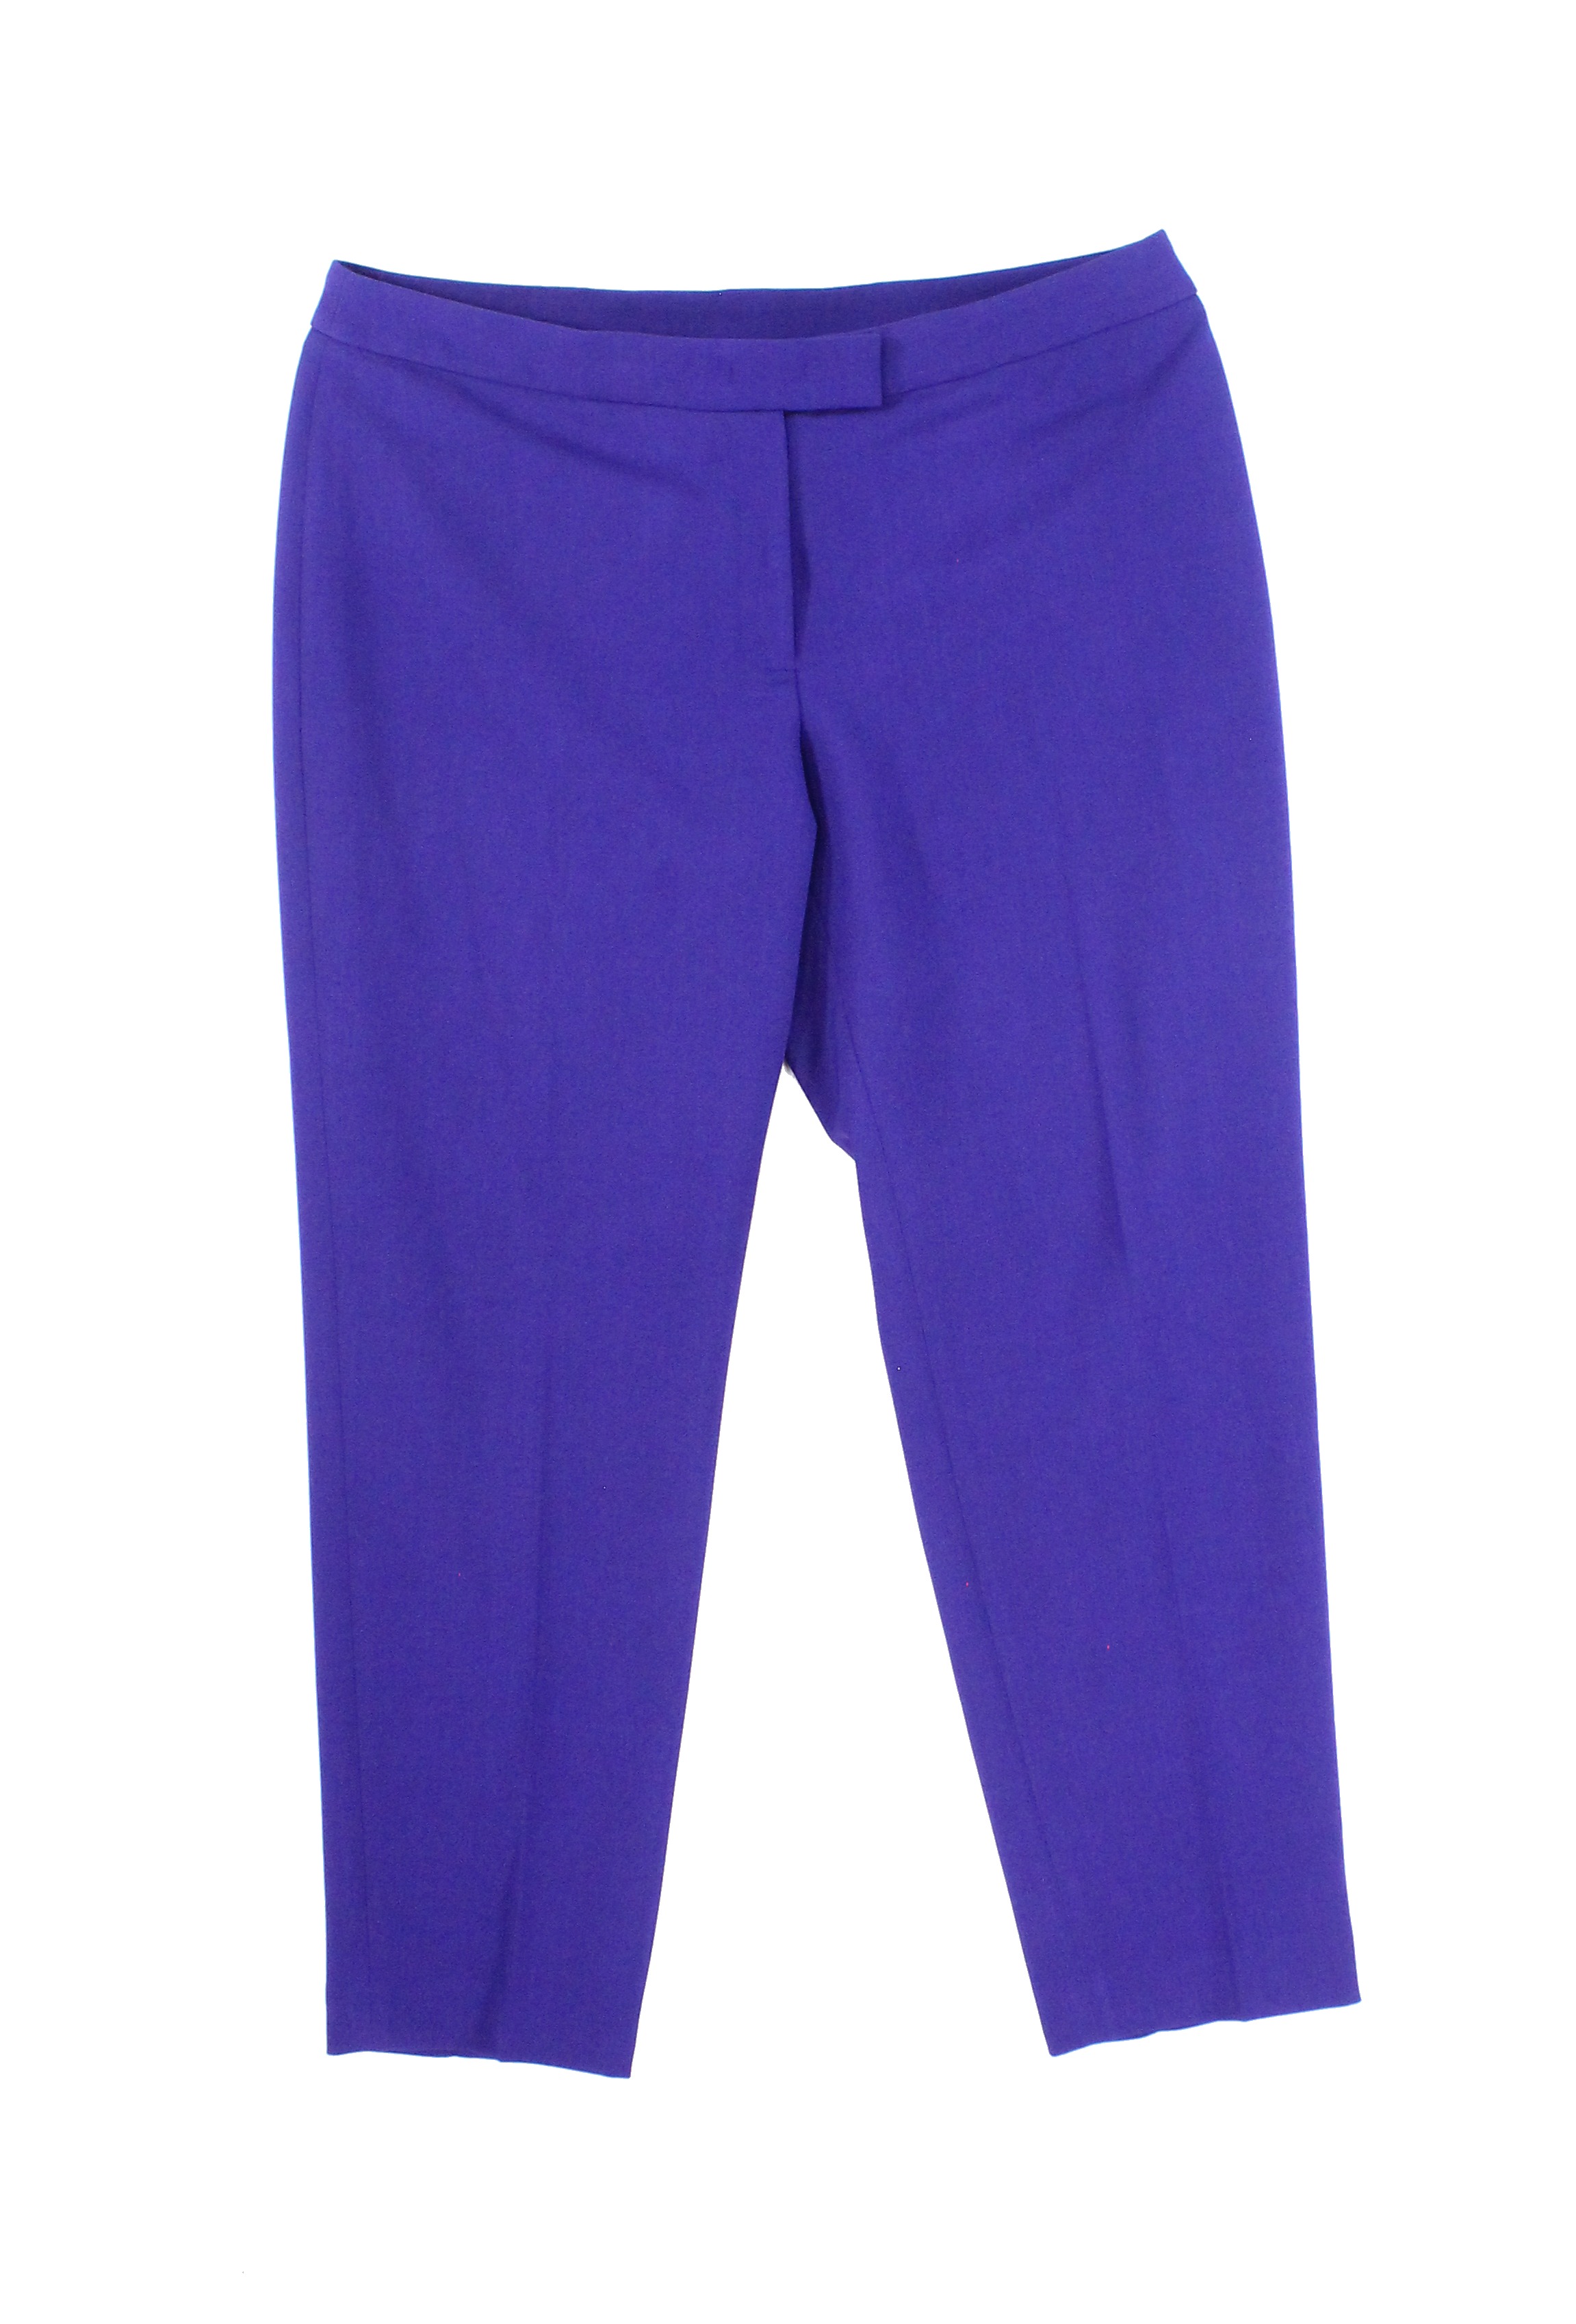 Anne Klein - Anne Klein NEW Purple Womens Size 14 Slim Fit Cropped ...